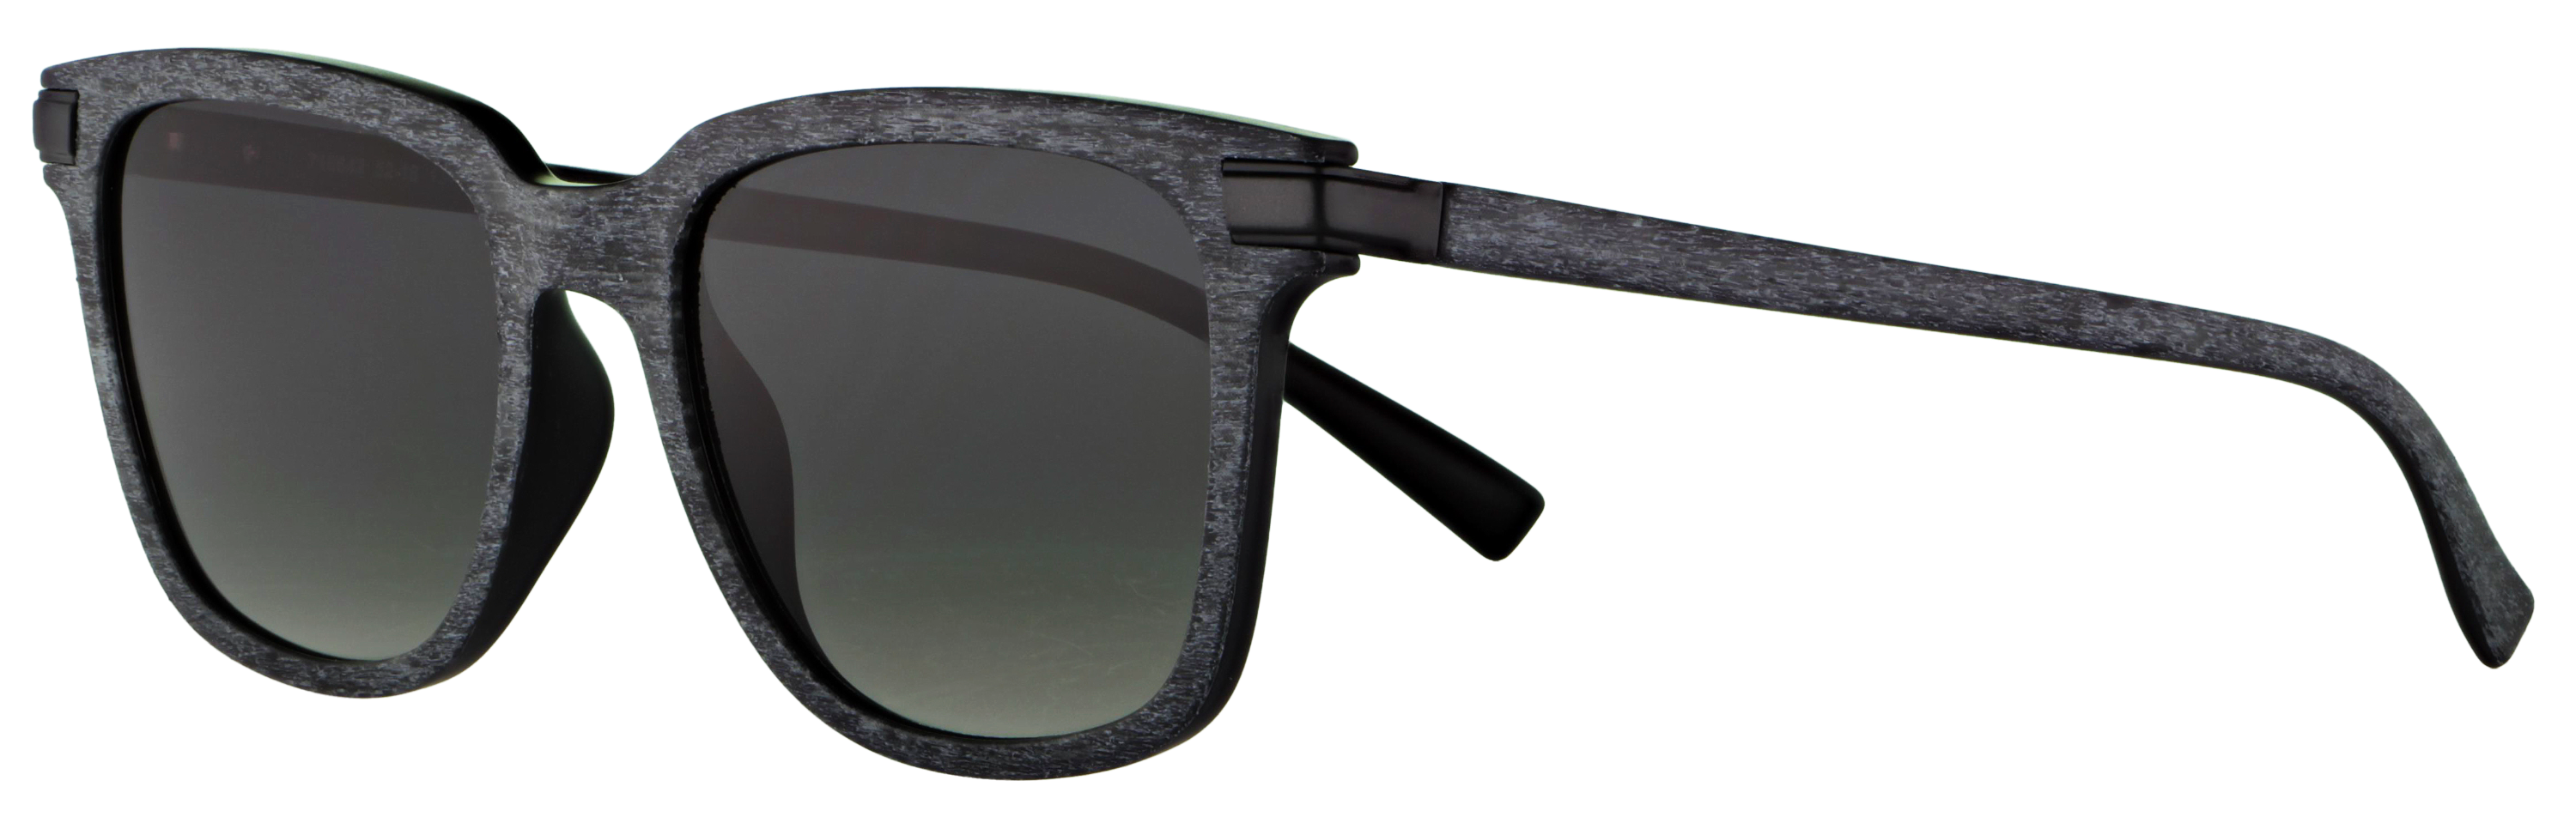 Das Bild zeigt die Sonnenbrille 718642 von der Marke Abele Optik in schwarz / weiß.